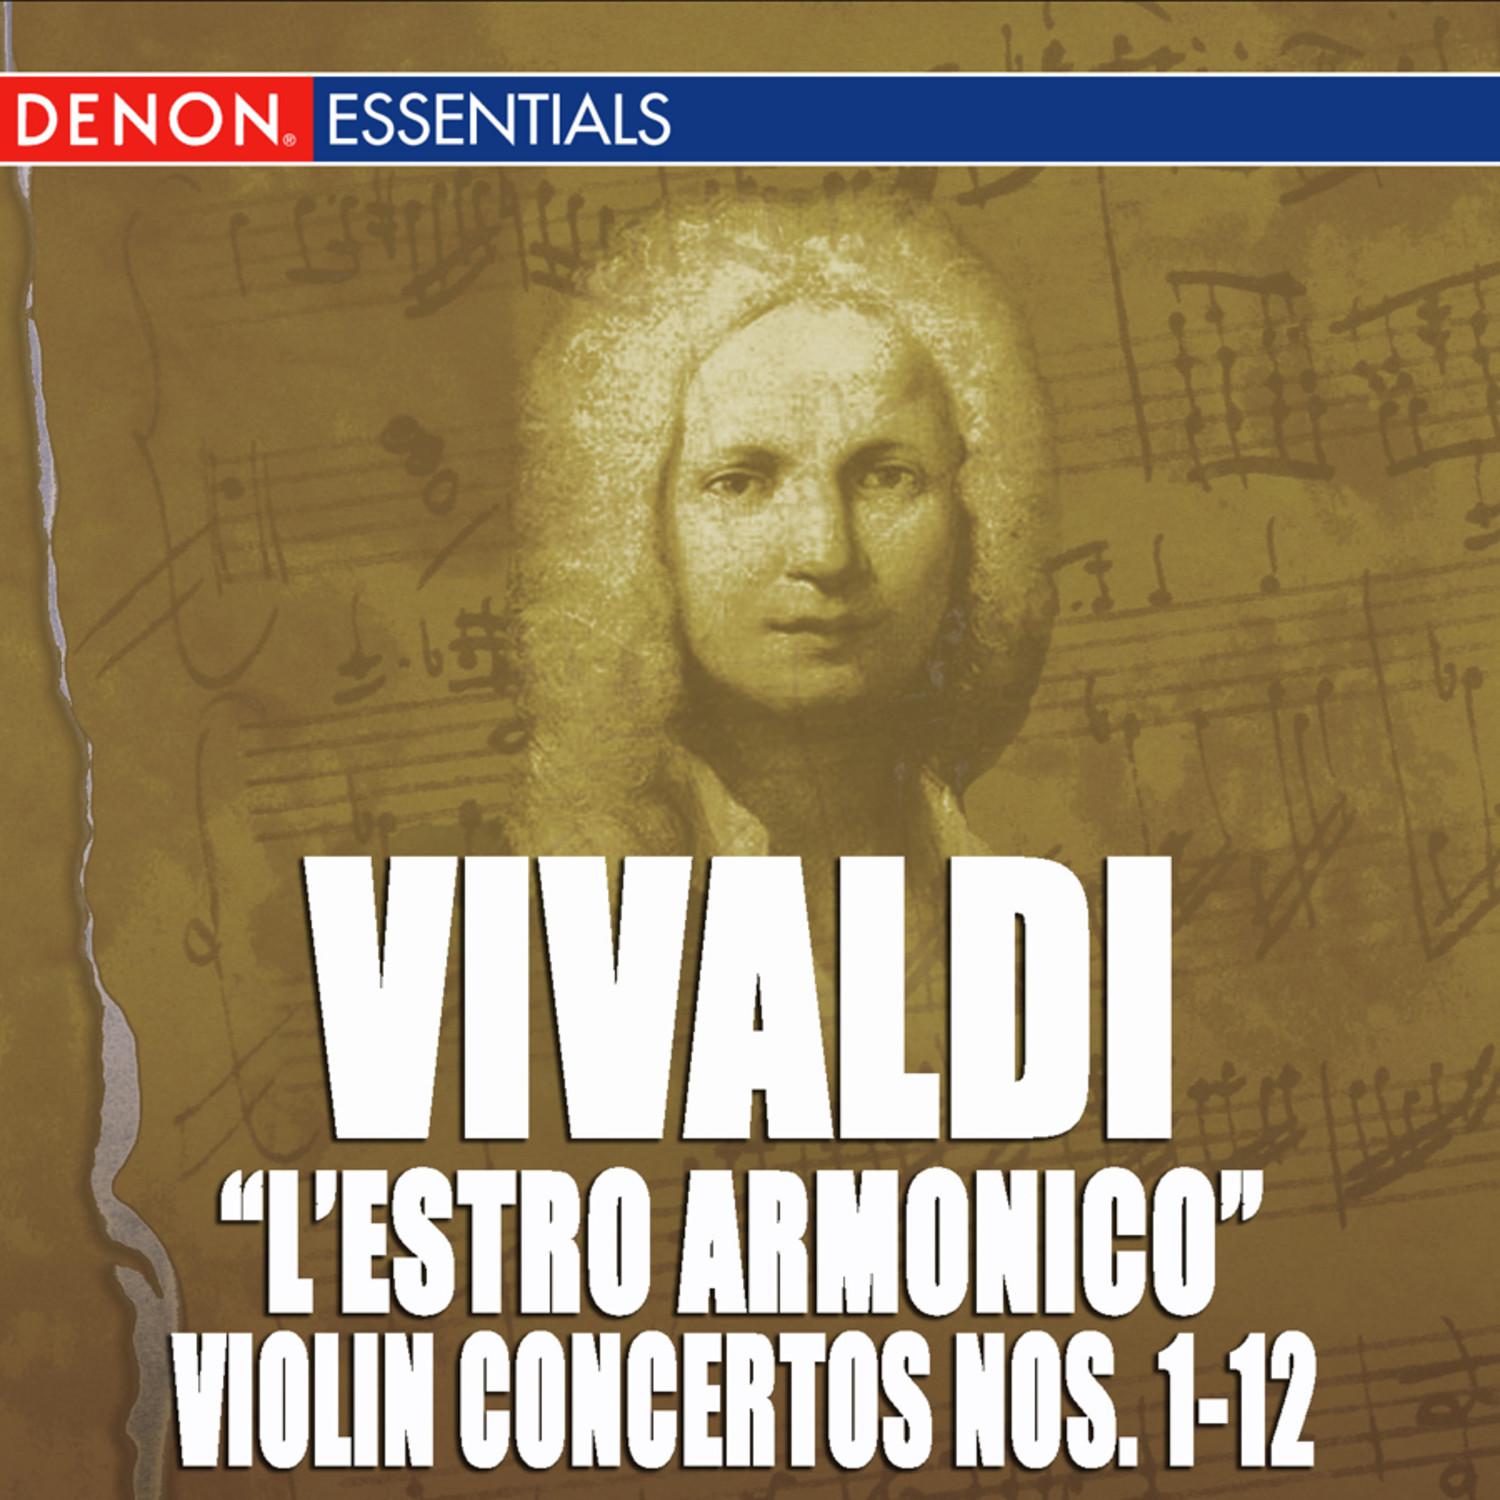 Concerto for Violin, Strings & B.c. No. 9 in D Major, Op. 3 RV 230: III. Allegro